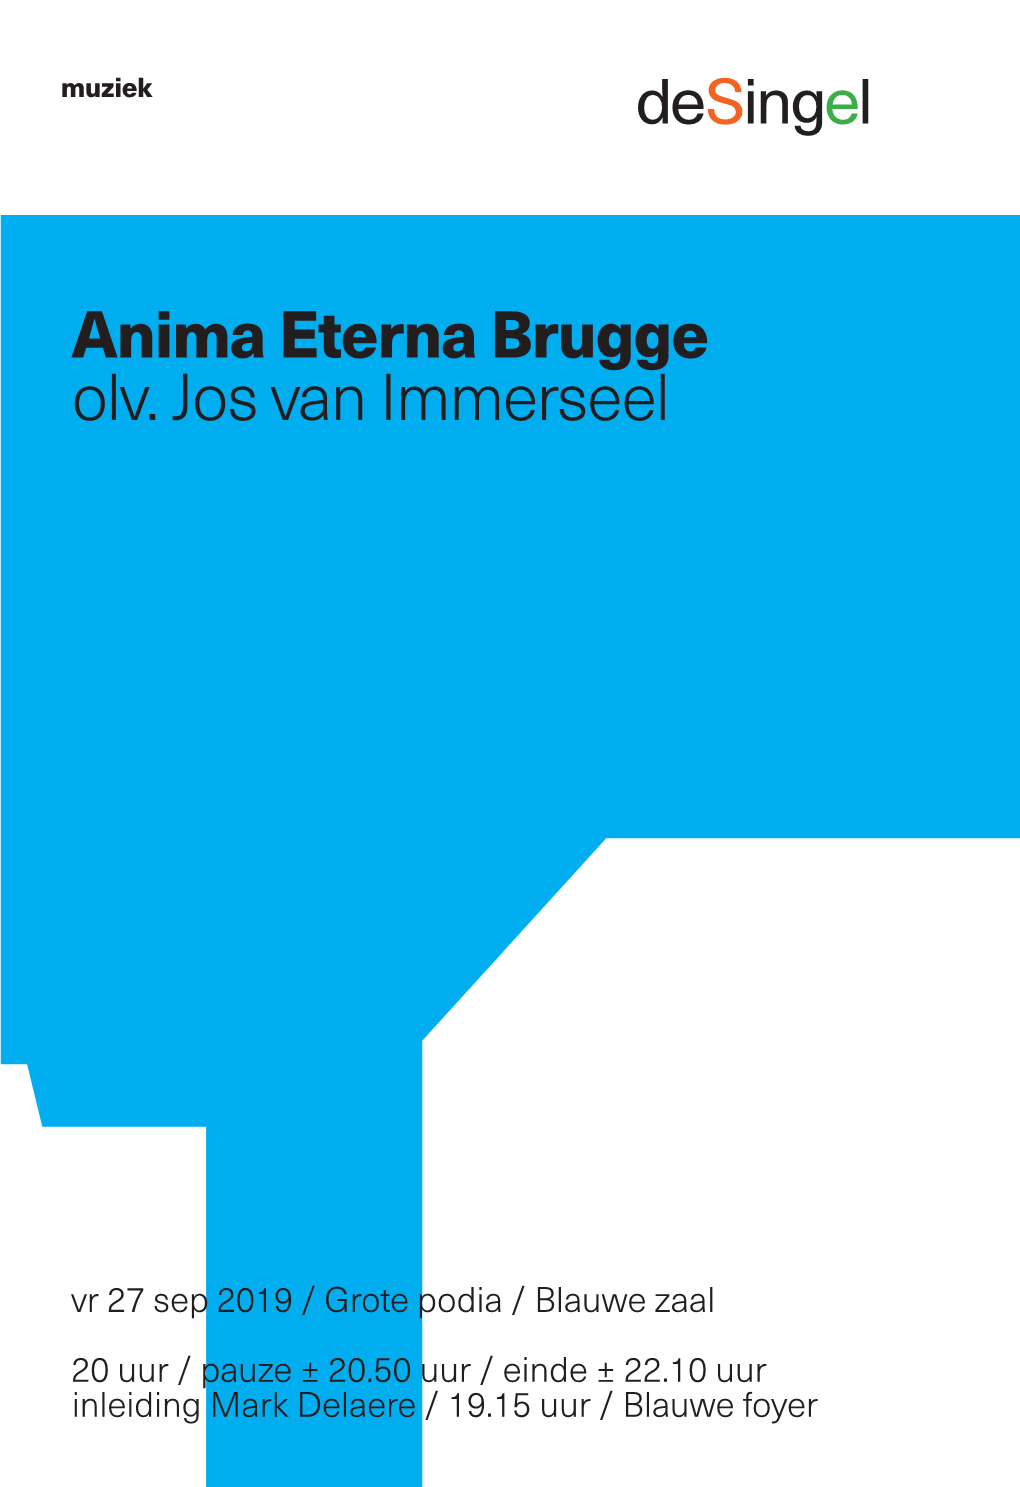 Anima Eterna Brugge Olv. Jos Van Immerseel